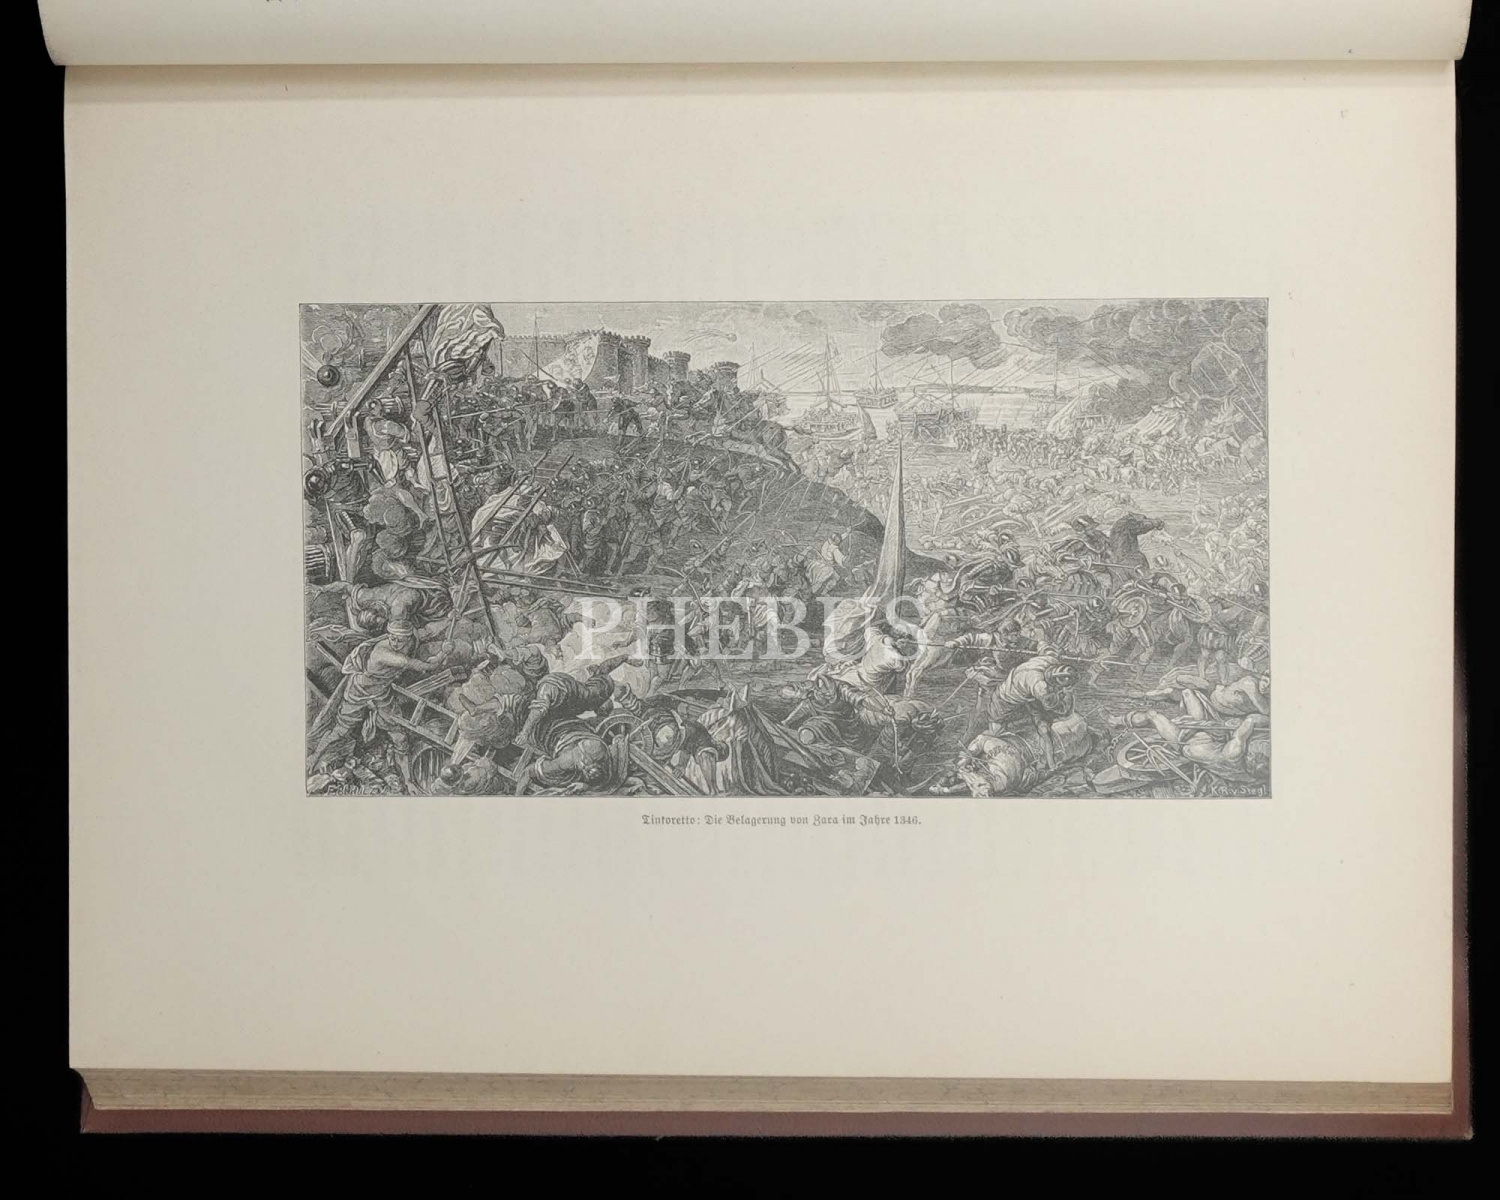 DIE ÖSTERREICHISCH-UNGARISCHE MONARCHIE IN WORT UND BILD (11,22 ve 23 Ciltleri), Taatsdruckerei KK Hof-und, 1892, Wien, 352+594+516 sayfa, 22x28 cm...